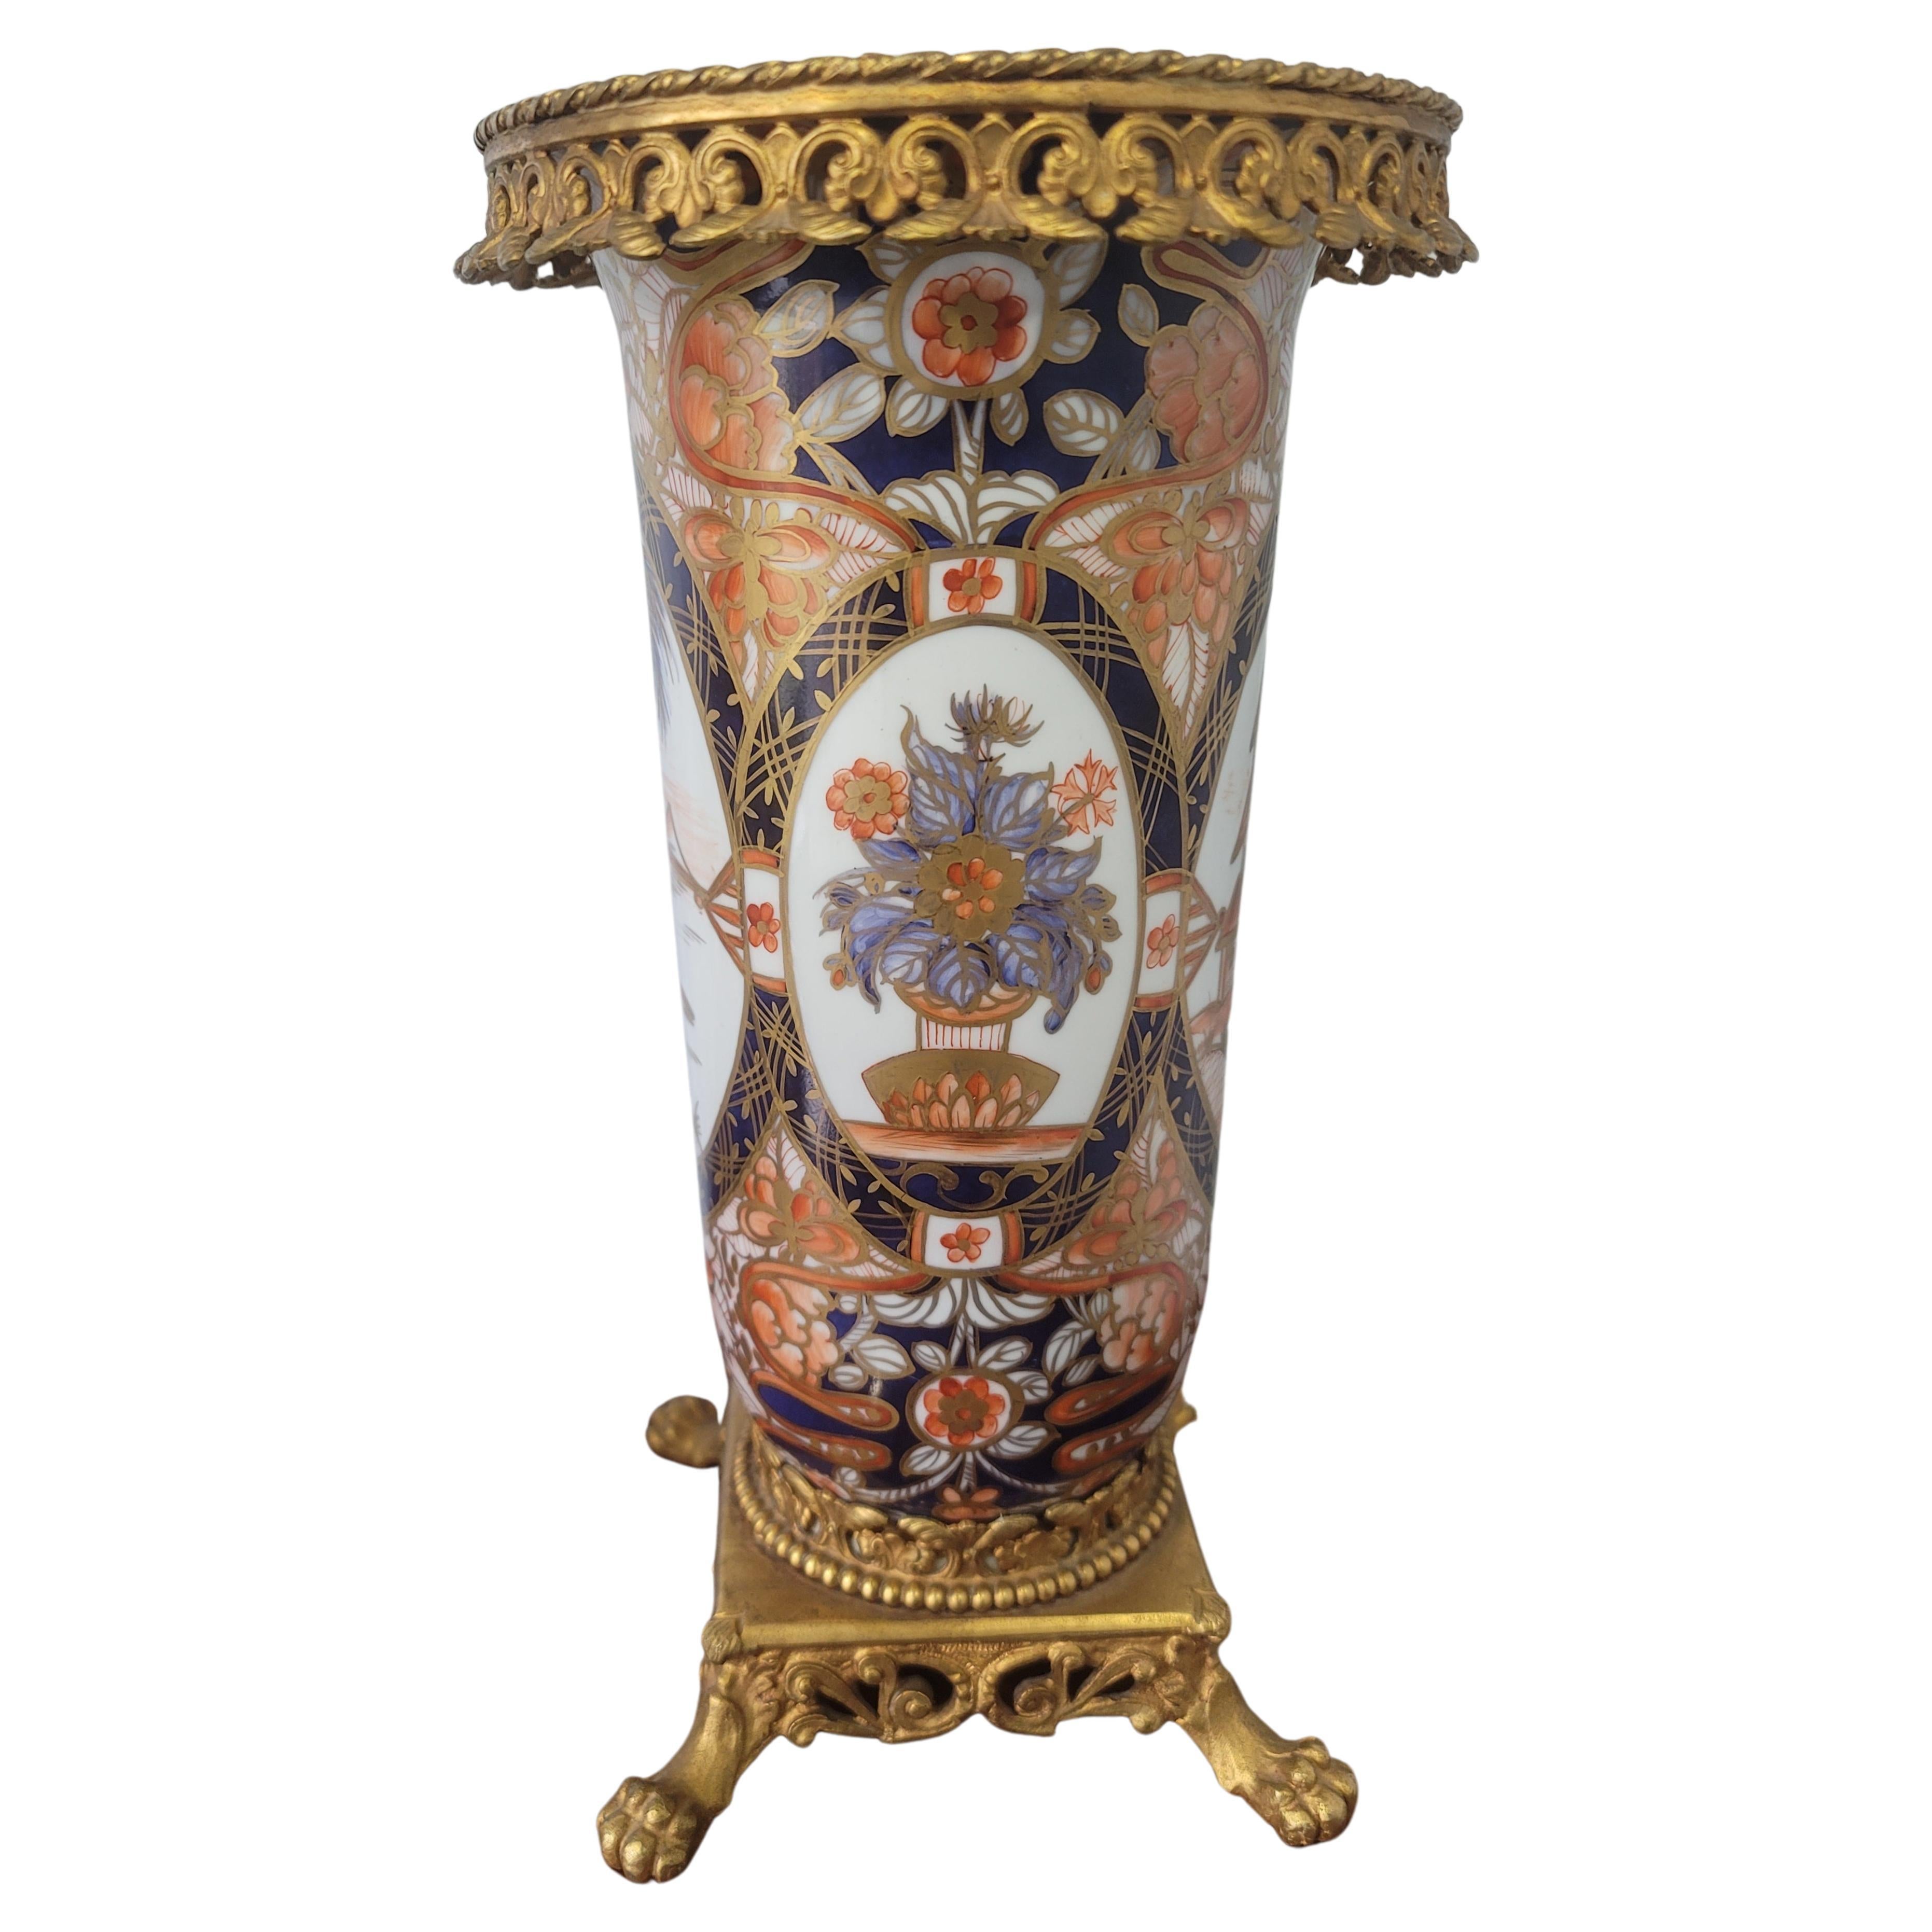 Une rareté, peinte à la main  Vase en porcelaine Imari française du 19e siècle avec galerie en laiton moulé et base sur pattes, avec corps cannelé de forme balustre s'élevant jusqu'à une bouche ouverte. Le plateau est décoré d'une dense et abondante